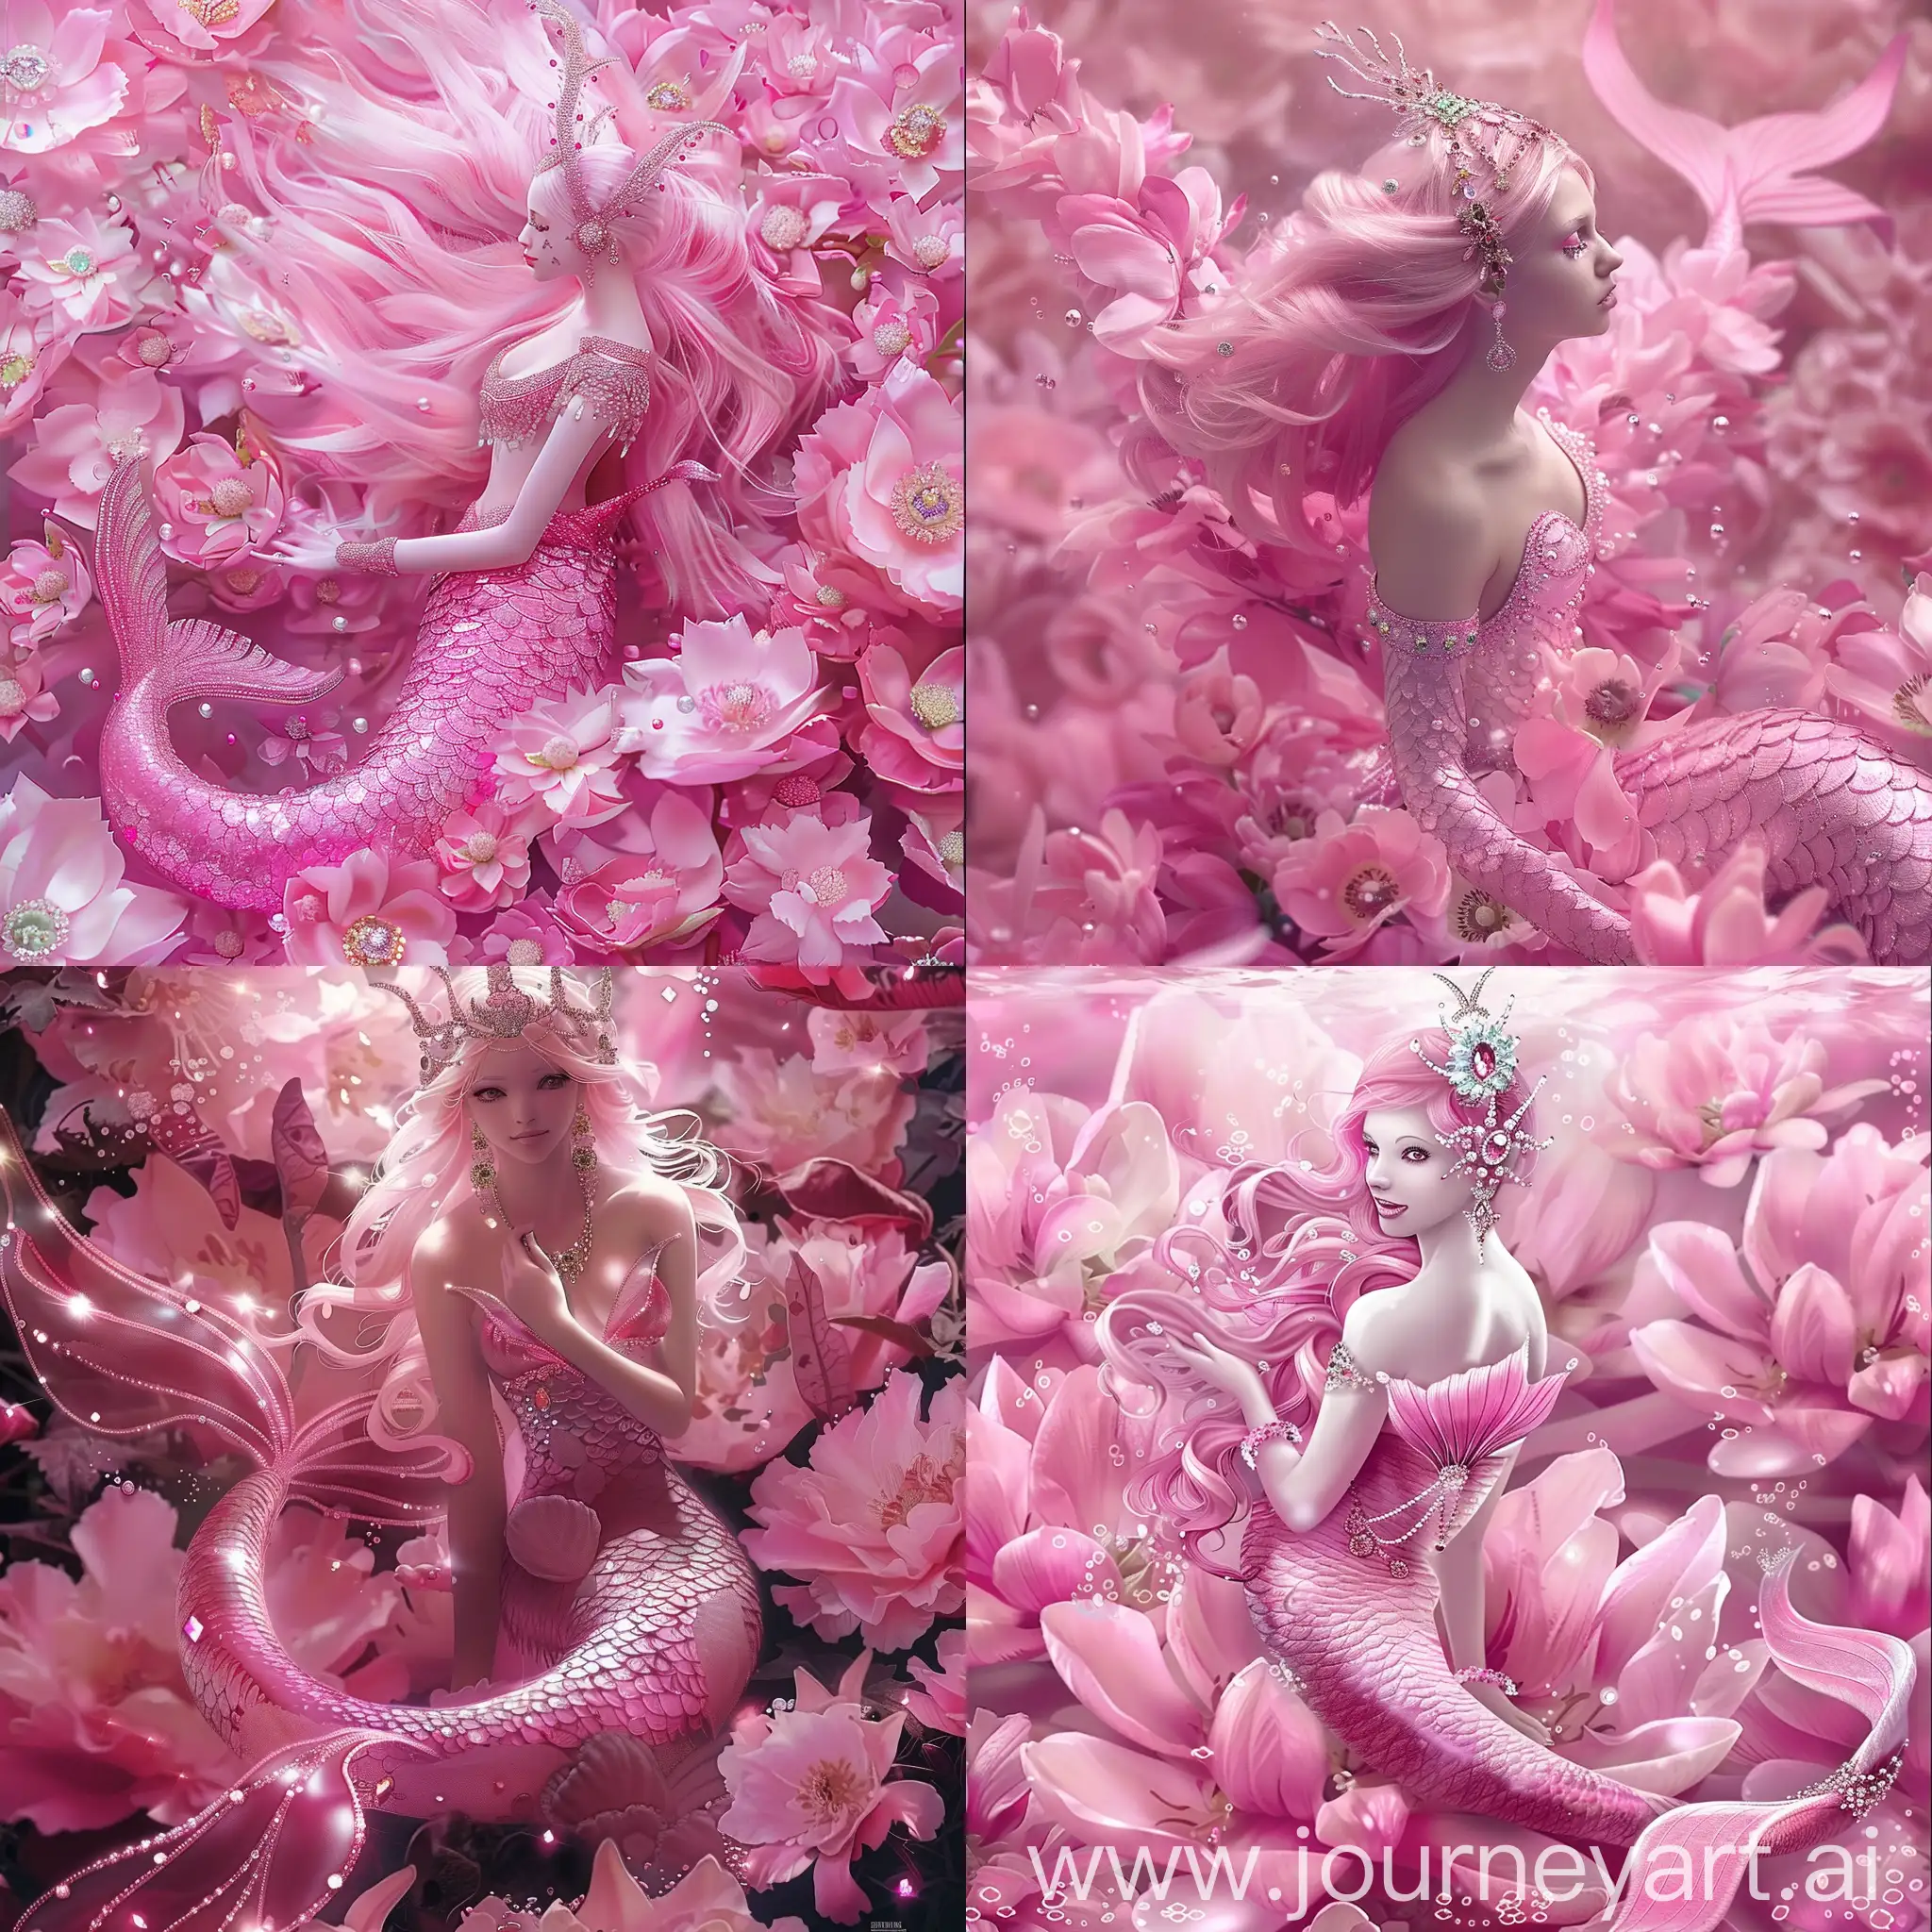 розовая русалка с драгоценностями в волосах сидит на цветах розового цвета